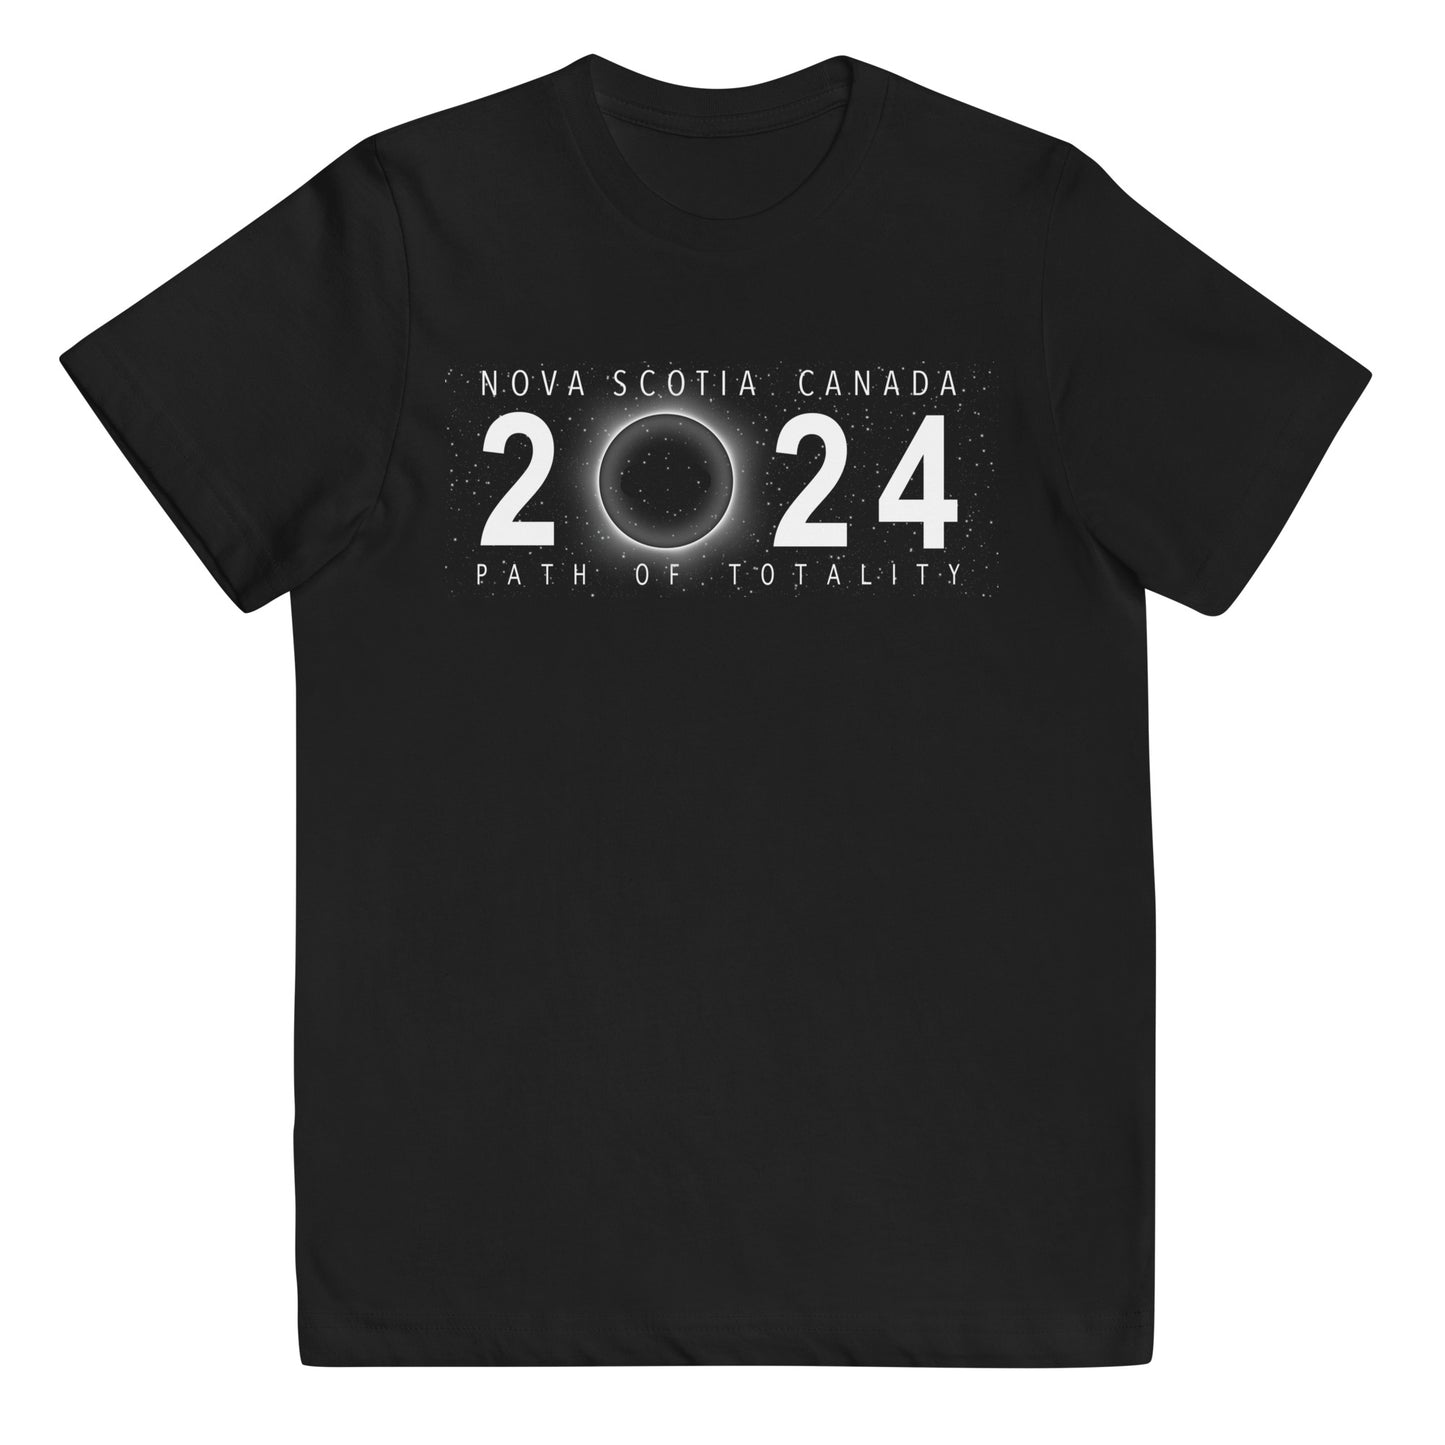 Solar Eclipse Nova Scotia Canada April 8 2024 Youth Jersey T-Shirt